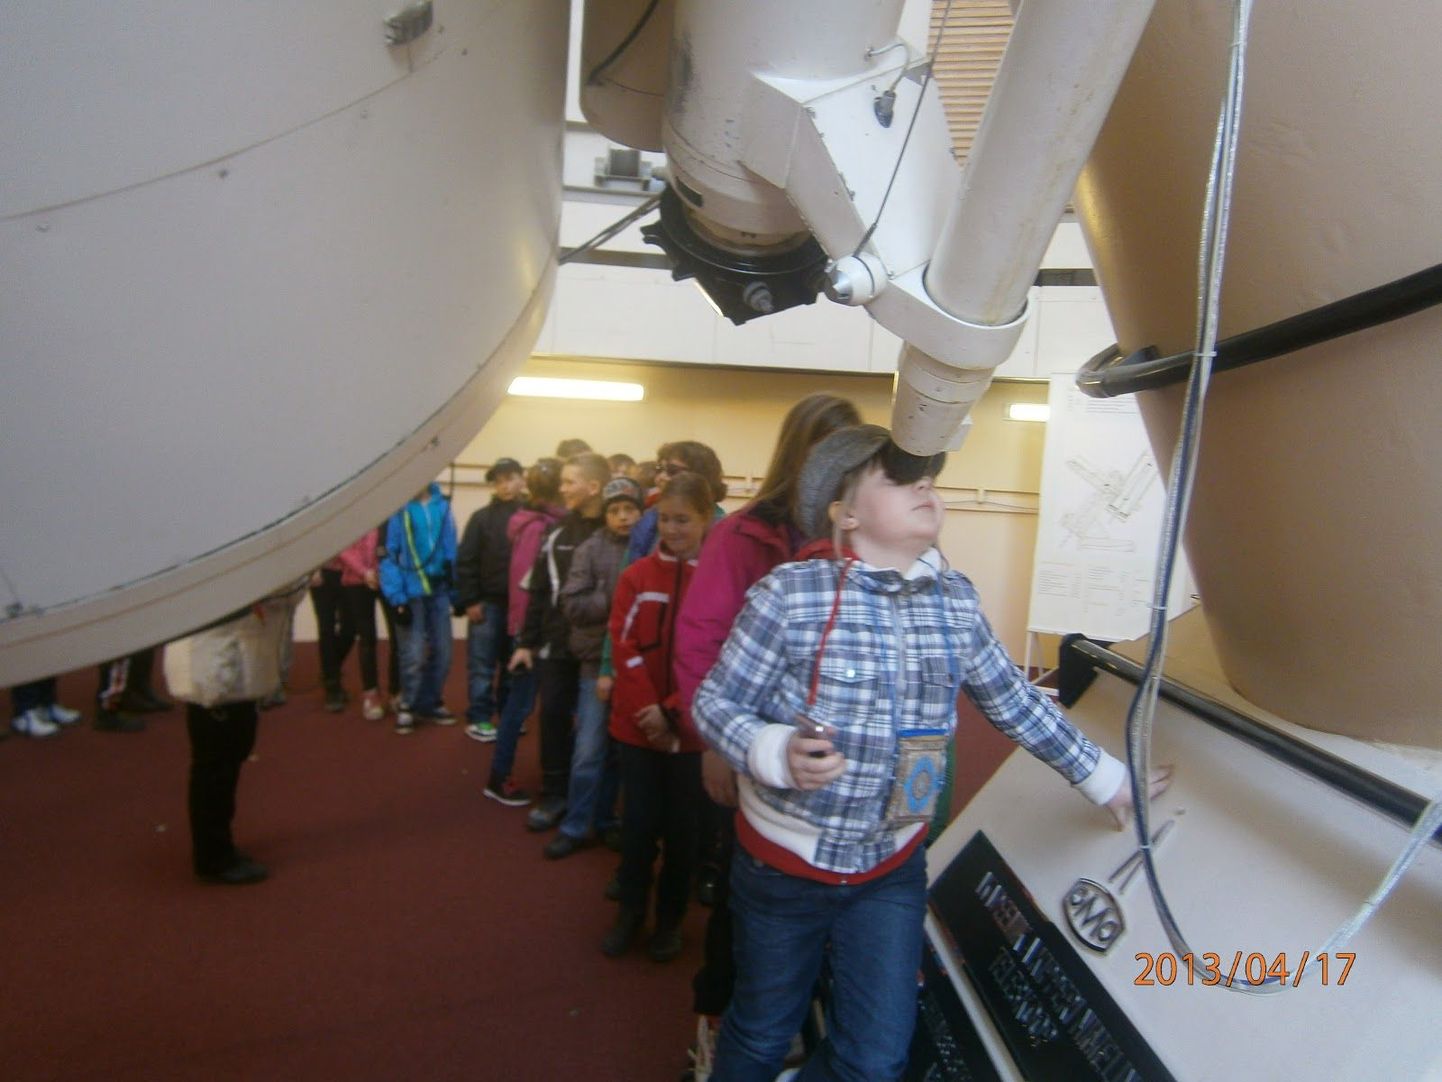 Vändra gümnaasiumi lapsed käisid õuesõppe raames teleskoobiga taevast vaatamas.